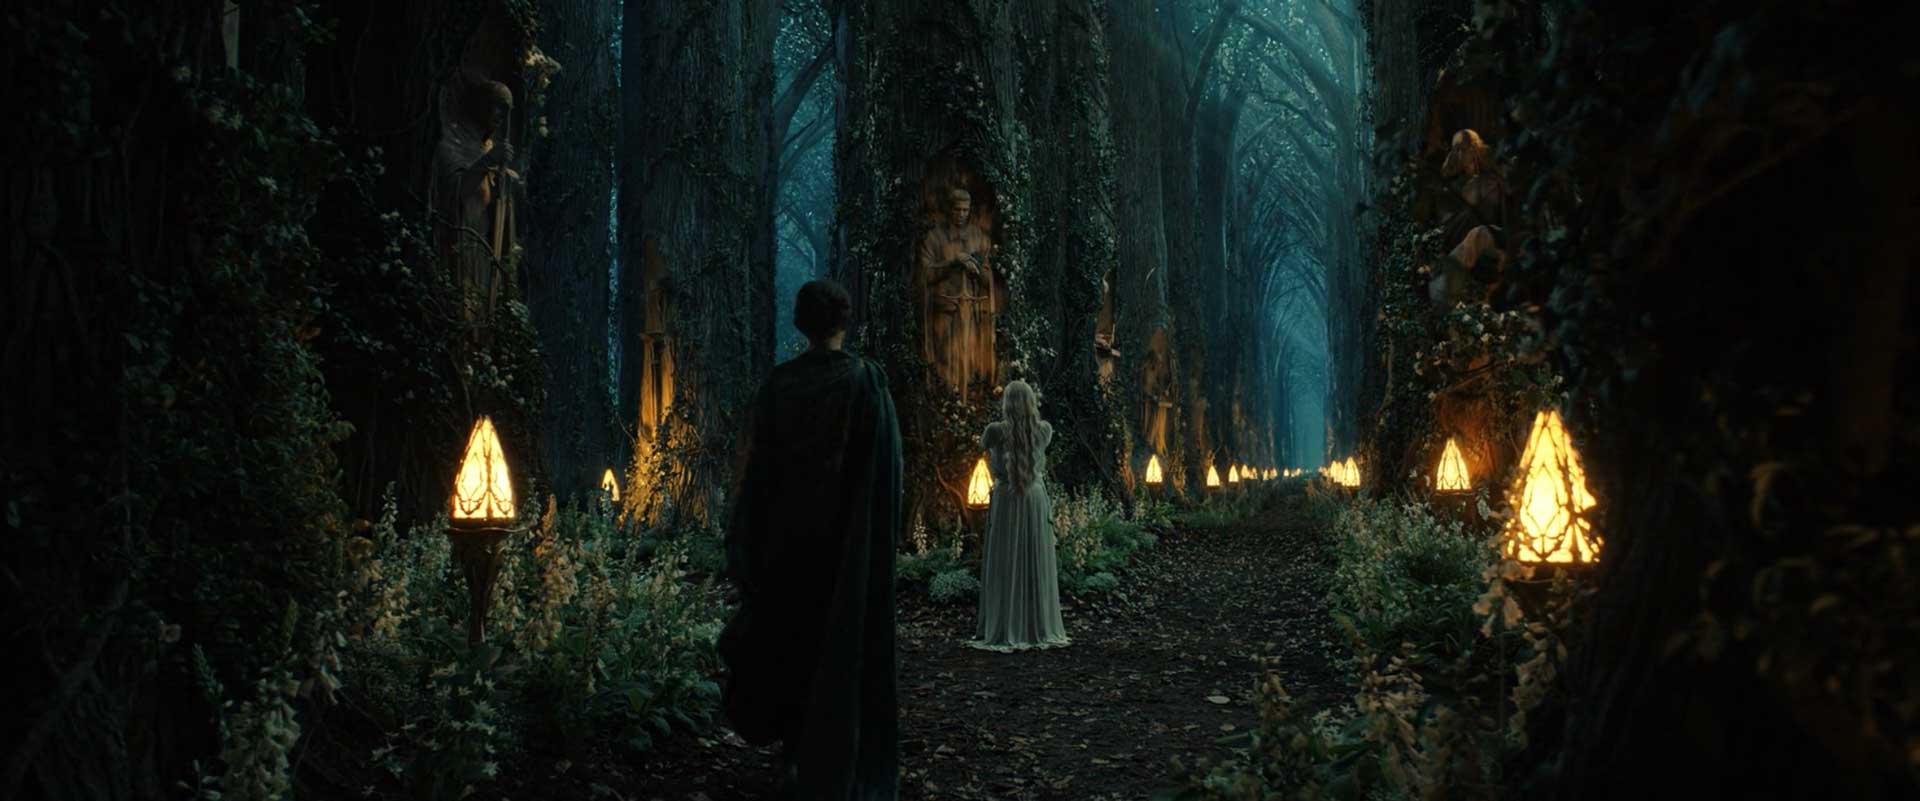 الروند و گالادریل در جنگل باشکوه در سریال The Lord of the Rings: The Rings of Power (ارباب حلقه ها: حلقه های قدرت)